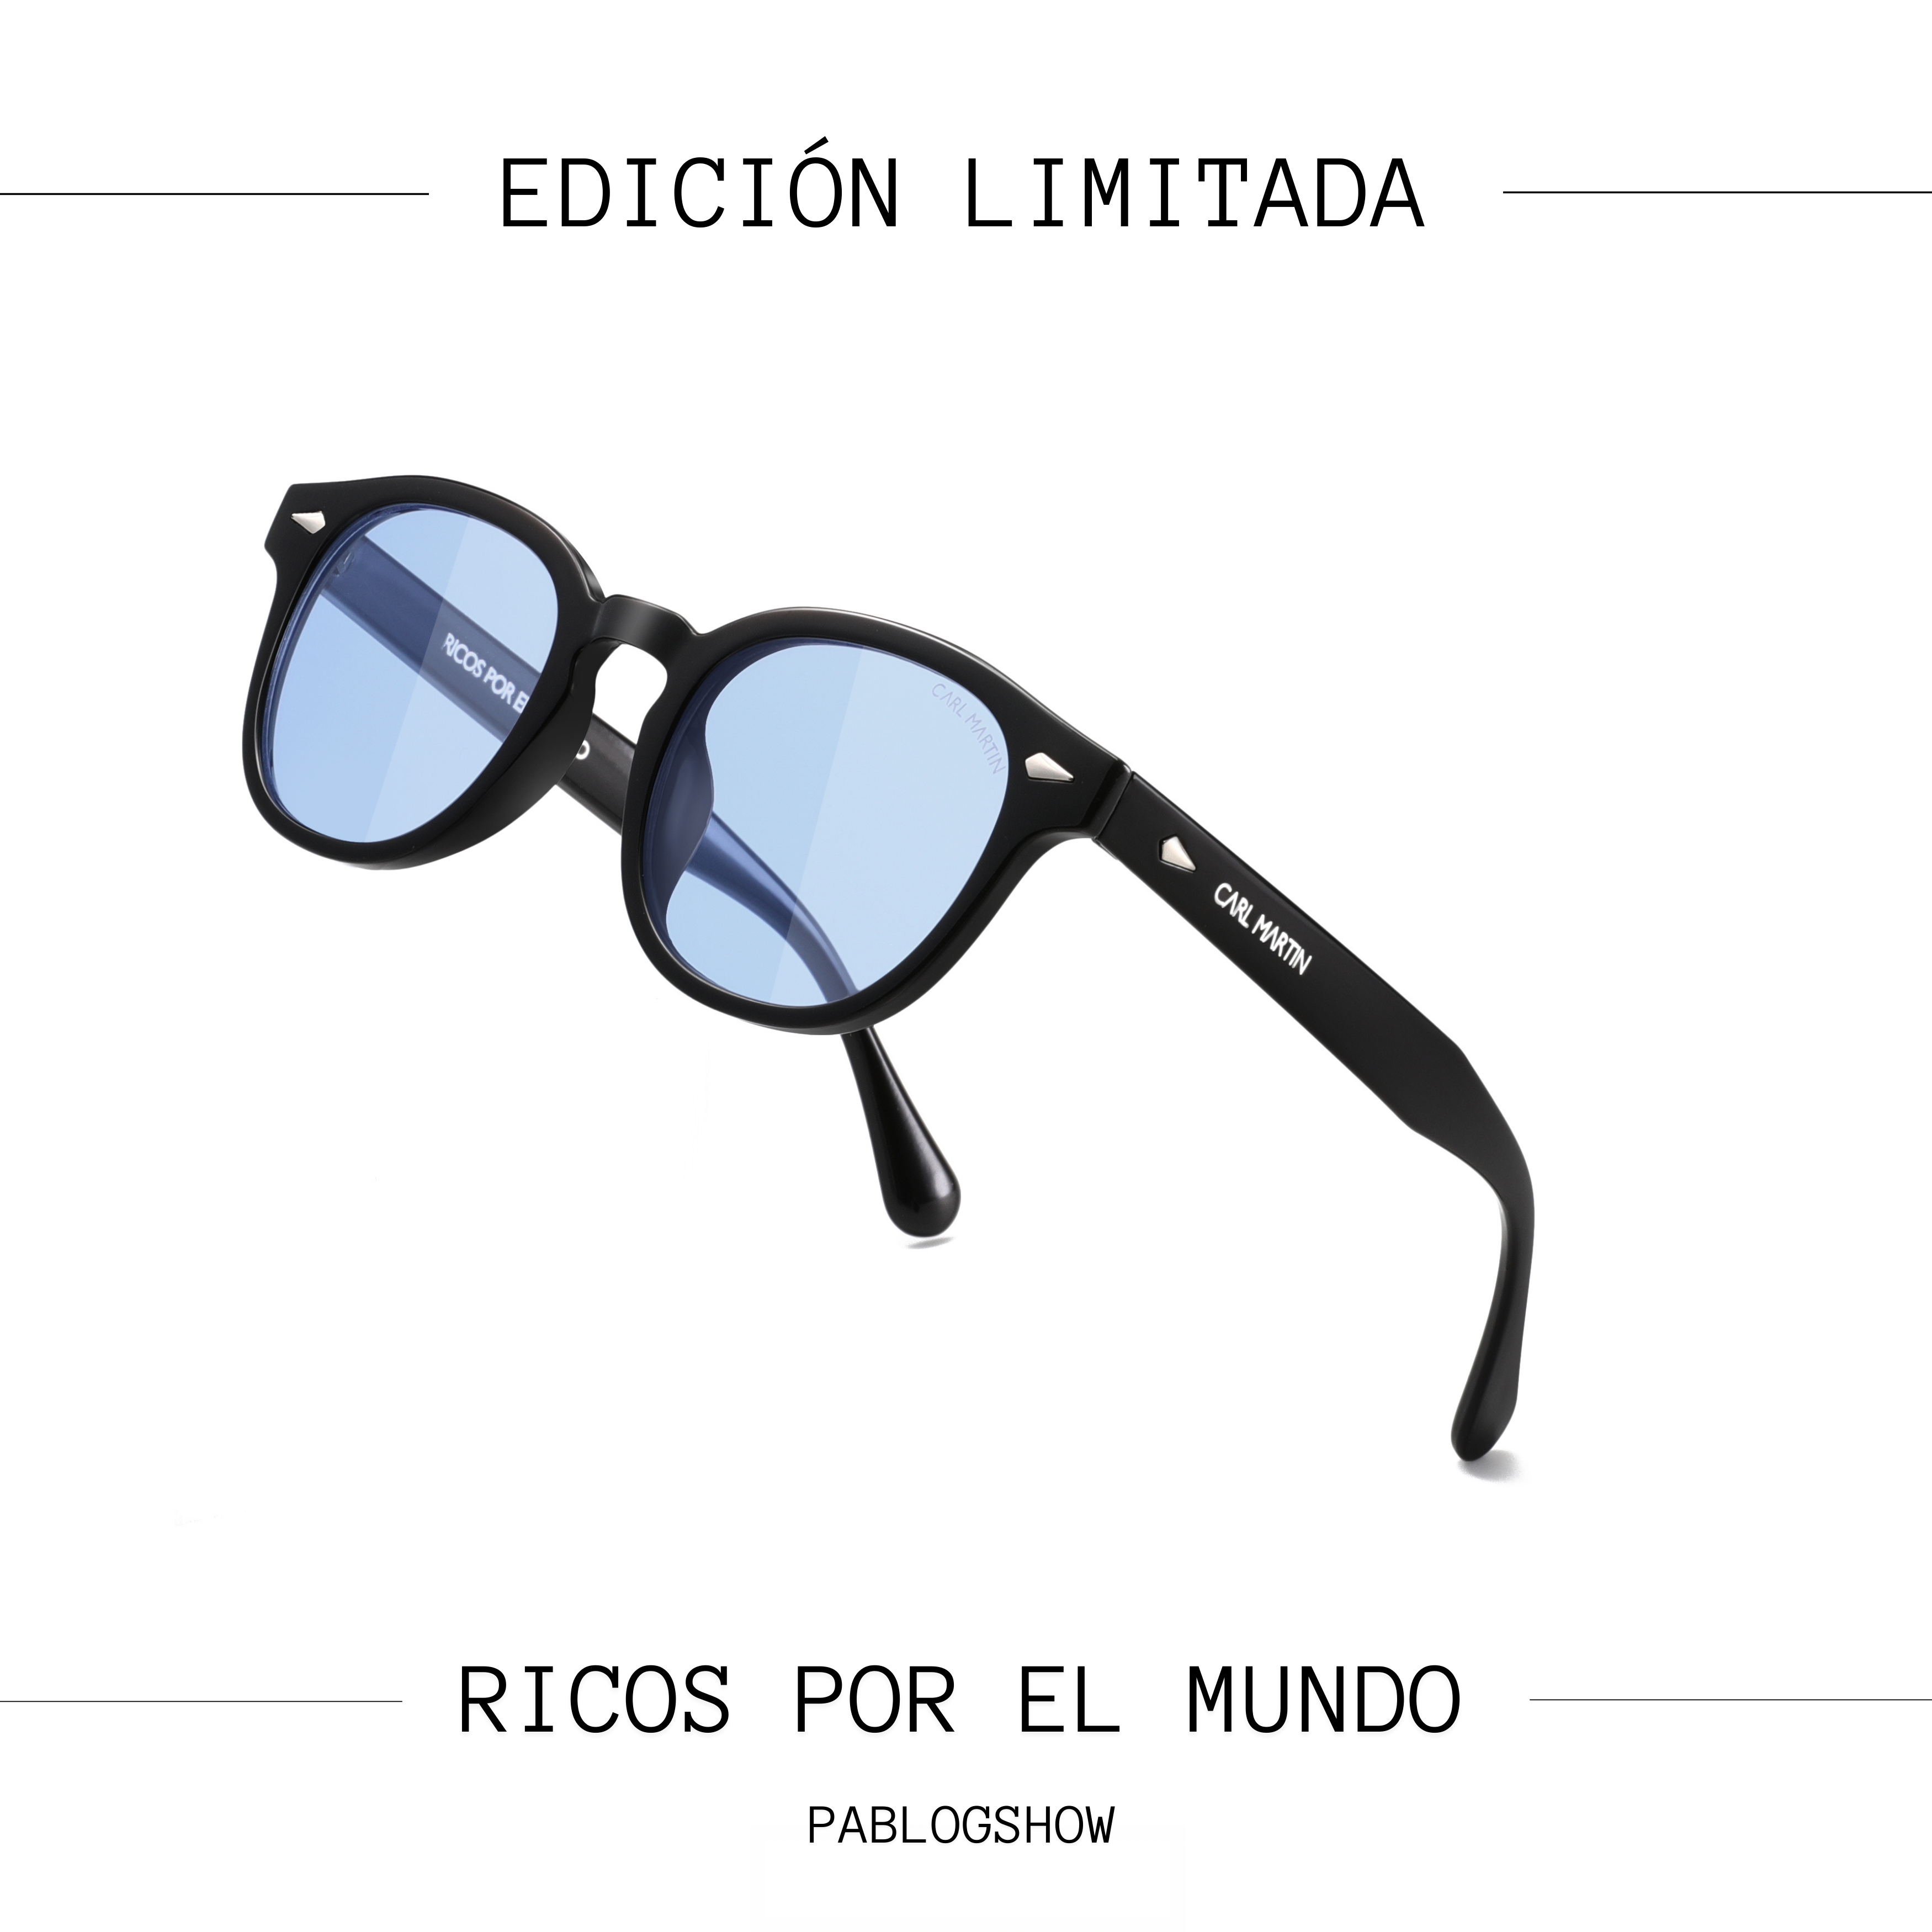 RICOS POR EL MUNDO (lentes azules)